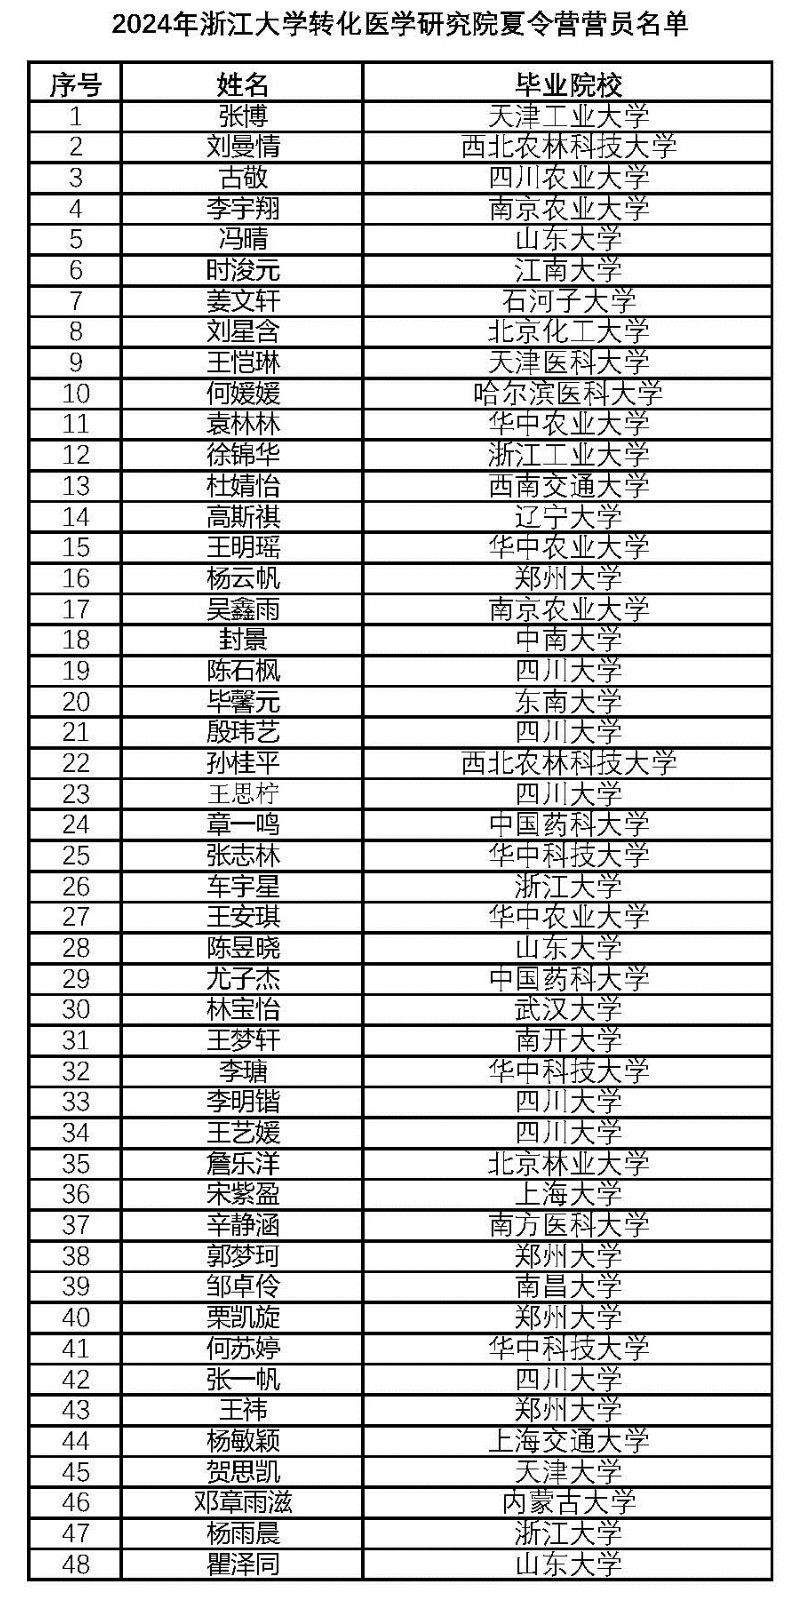 2024年浙江大学转化医学研究院夏令营营员名单-公示.jpg